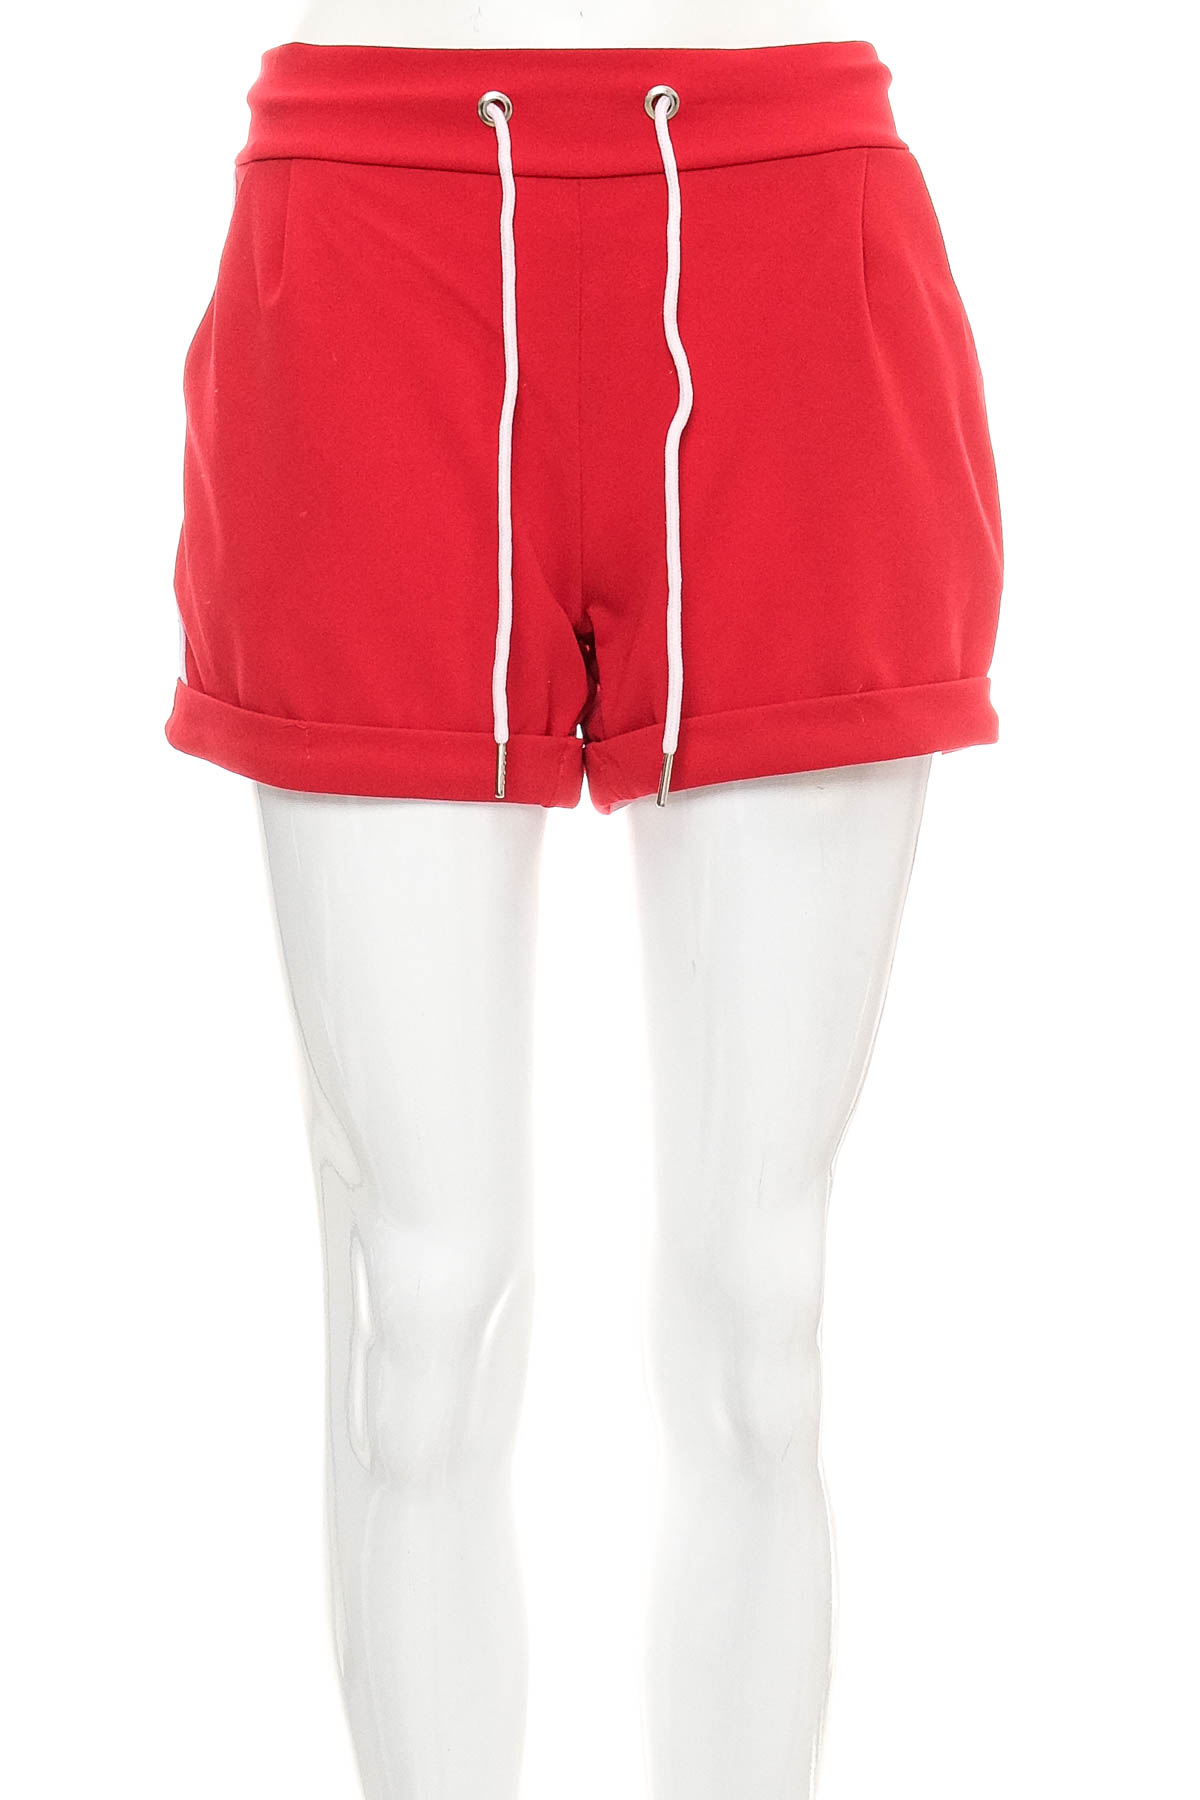 Female shorts - My Hailys - 0